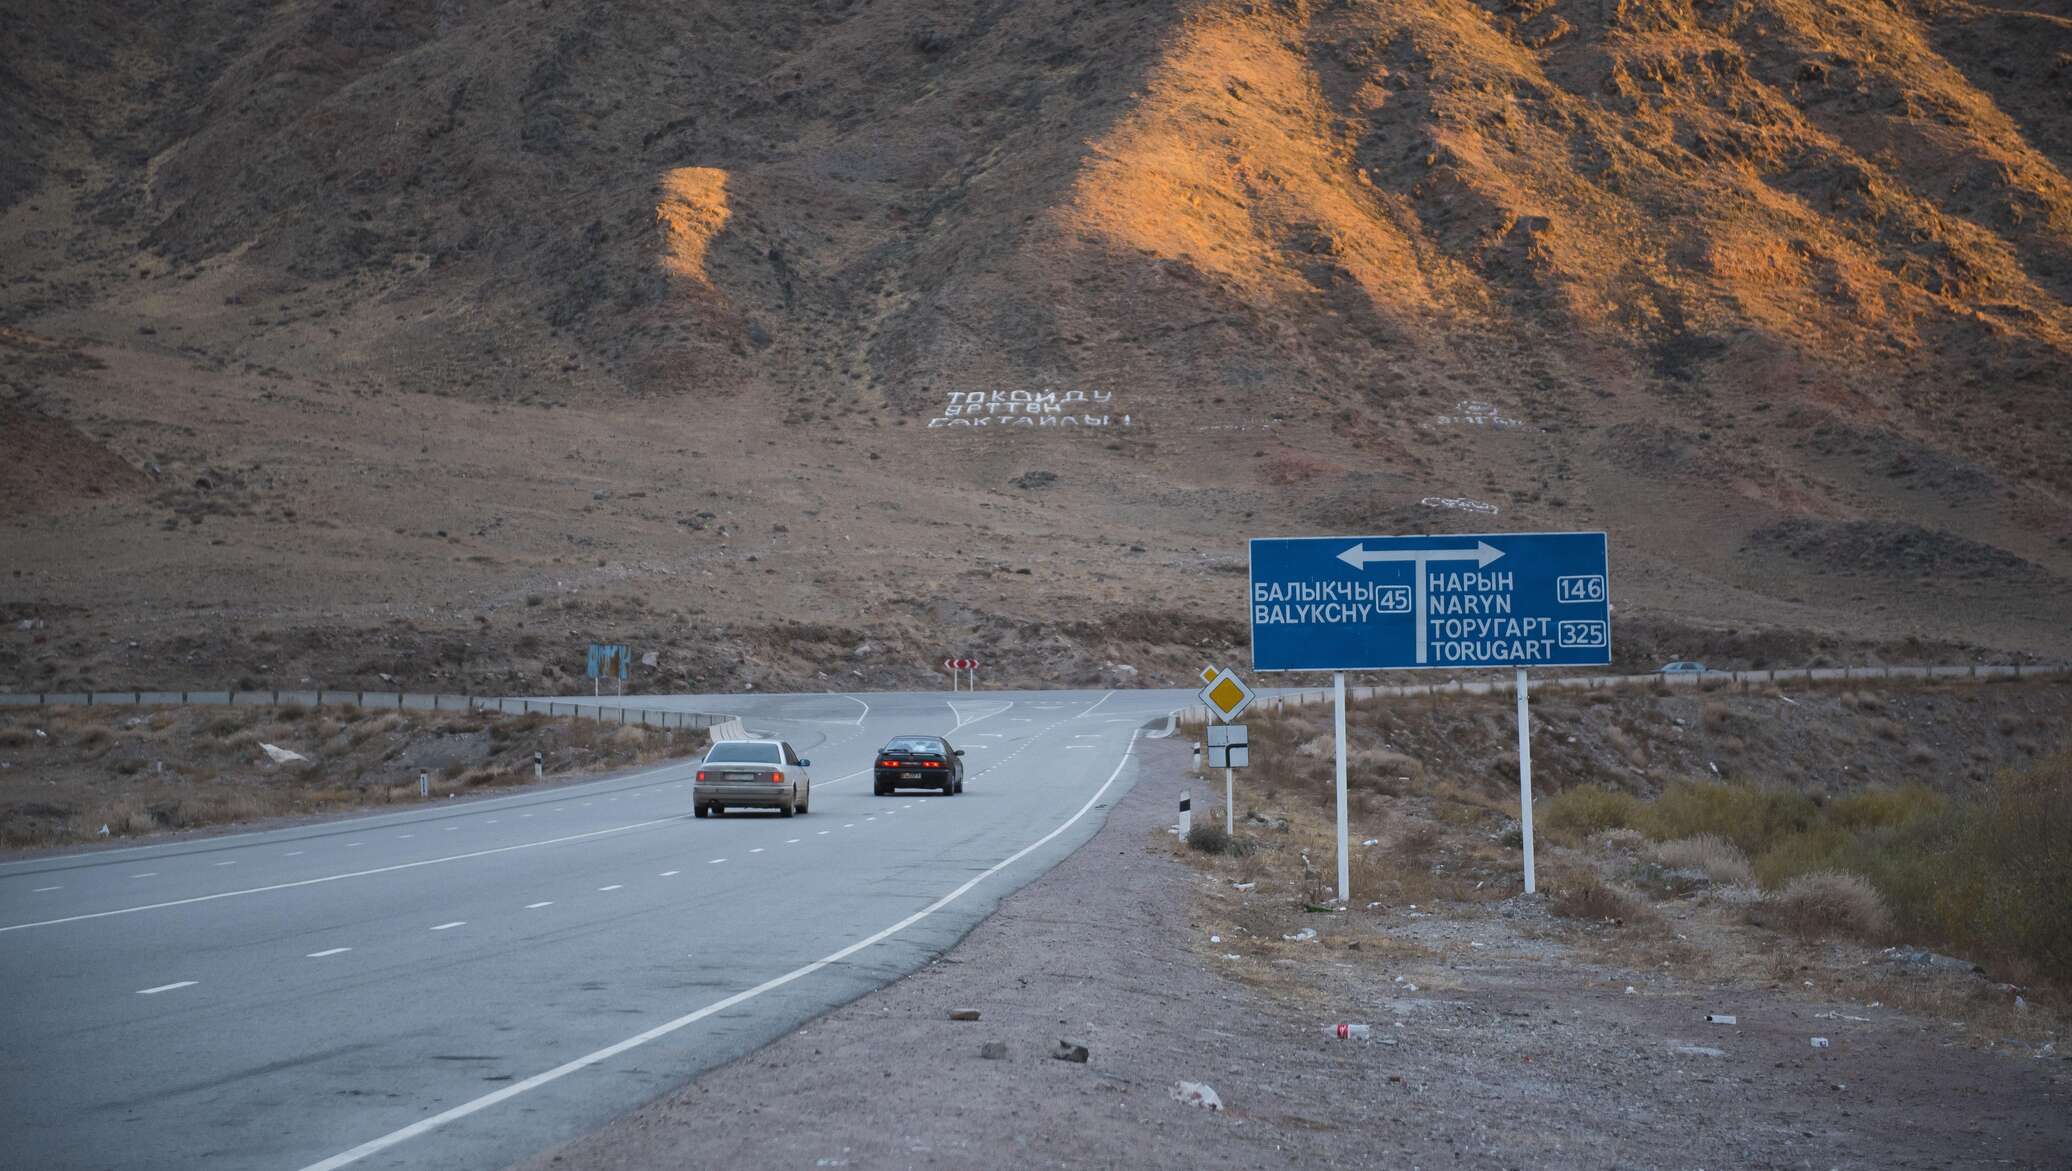 Реконструкция дороги Бишкек — Нарын — Торугарт позволит до 20% снизить потери на доставке продуктов - ЕАБР